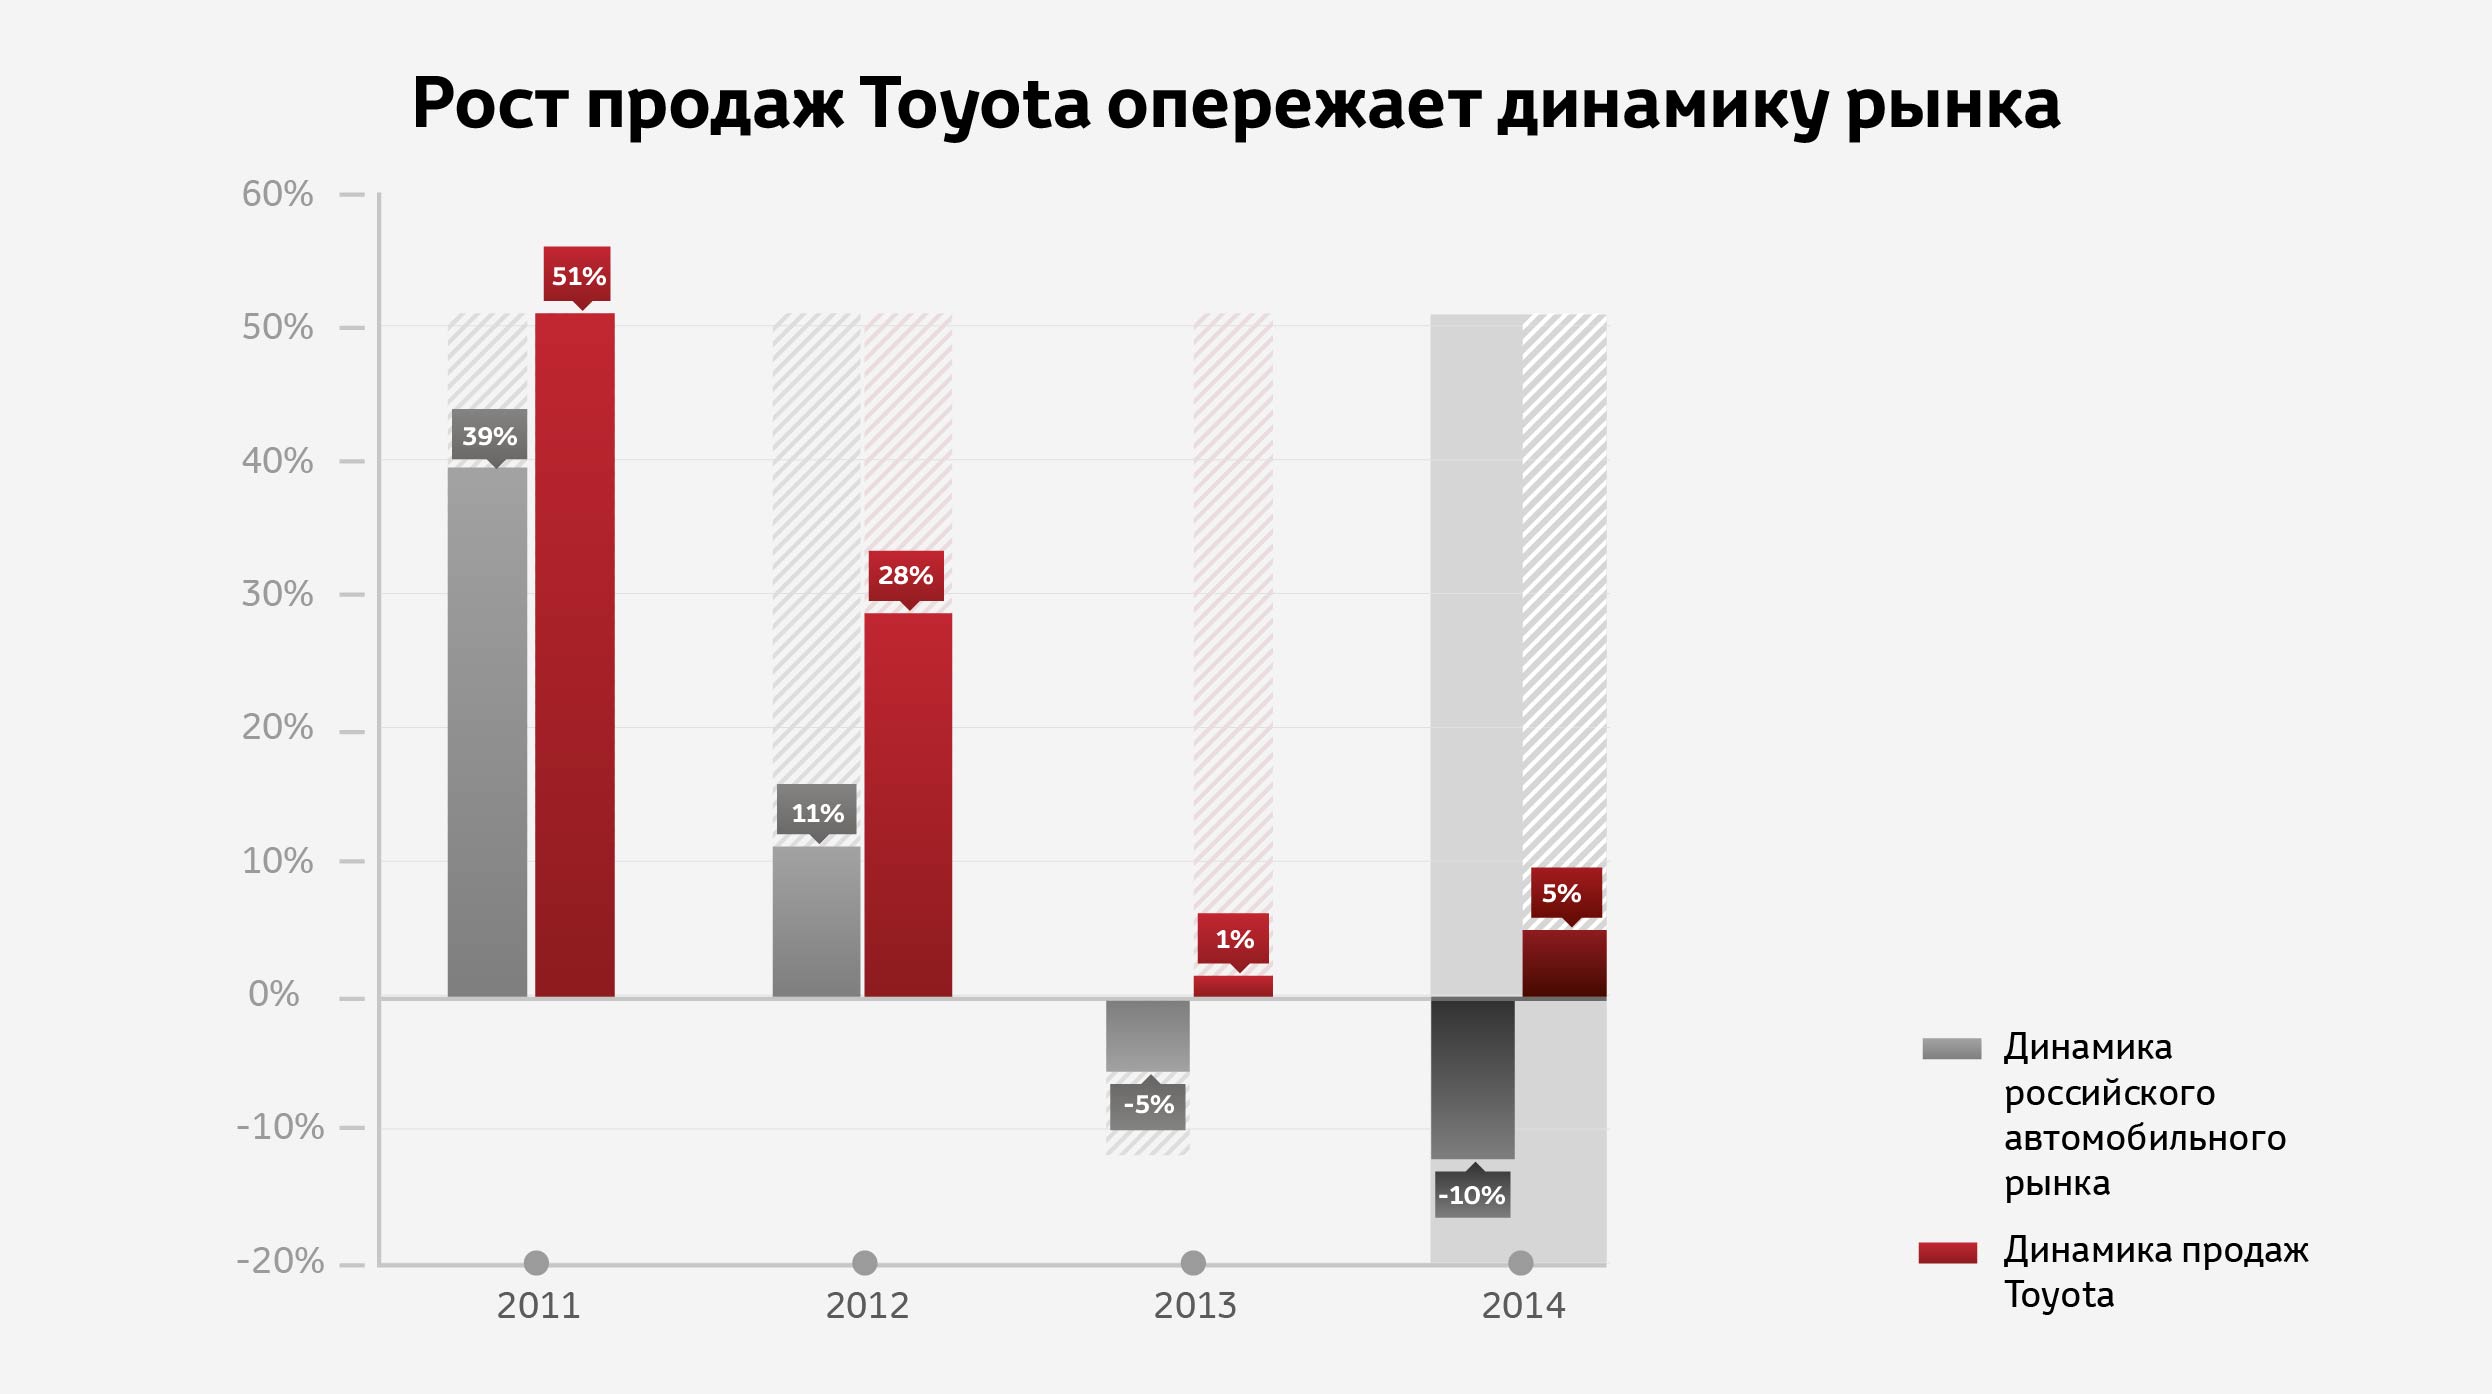 «Тойота Мотор» продемонстрировала позитивную динамику даже на падающем рынке в 2014 году